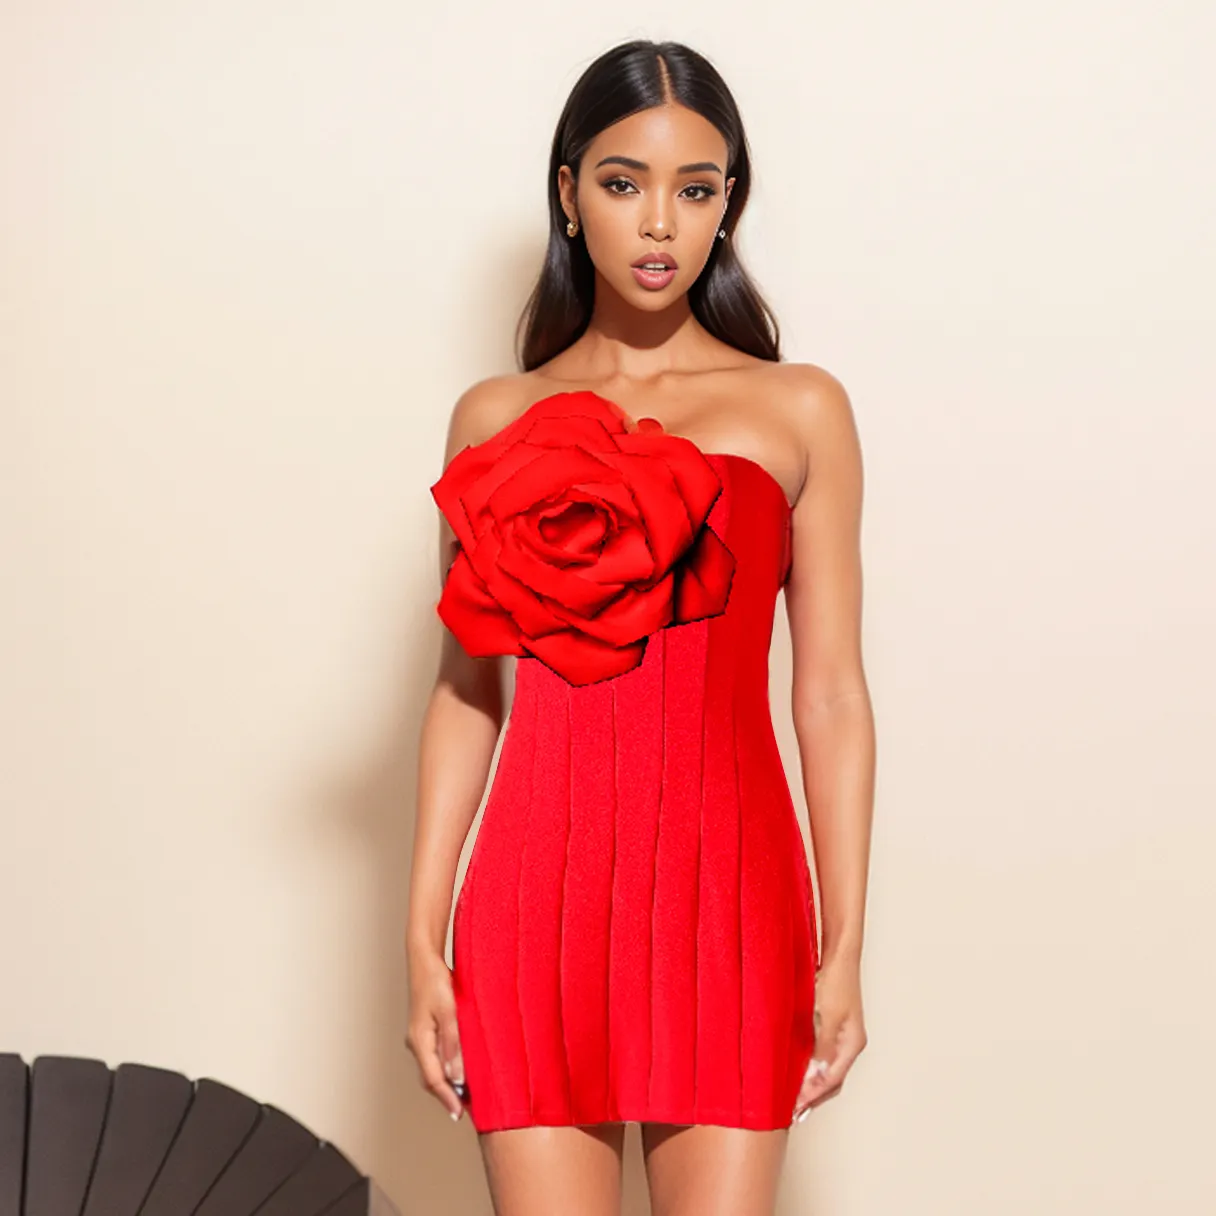 Màu Xanh Lá Cây Dimple Tùy Chỉnh Phụ Nữ Sexy Chặt Chẽ Ăn Mặc Thời Trang Hoa Strapless Dress Phụ Nữ Ngắn Giản Dị Đỏ Đỏ Ăn Mặc